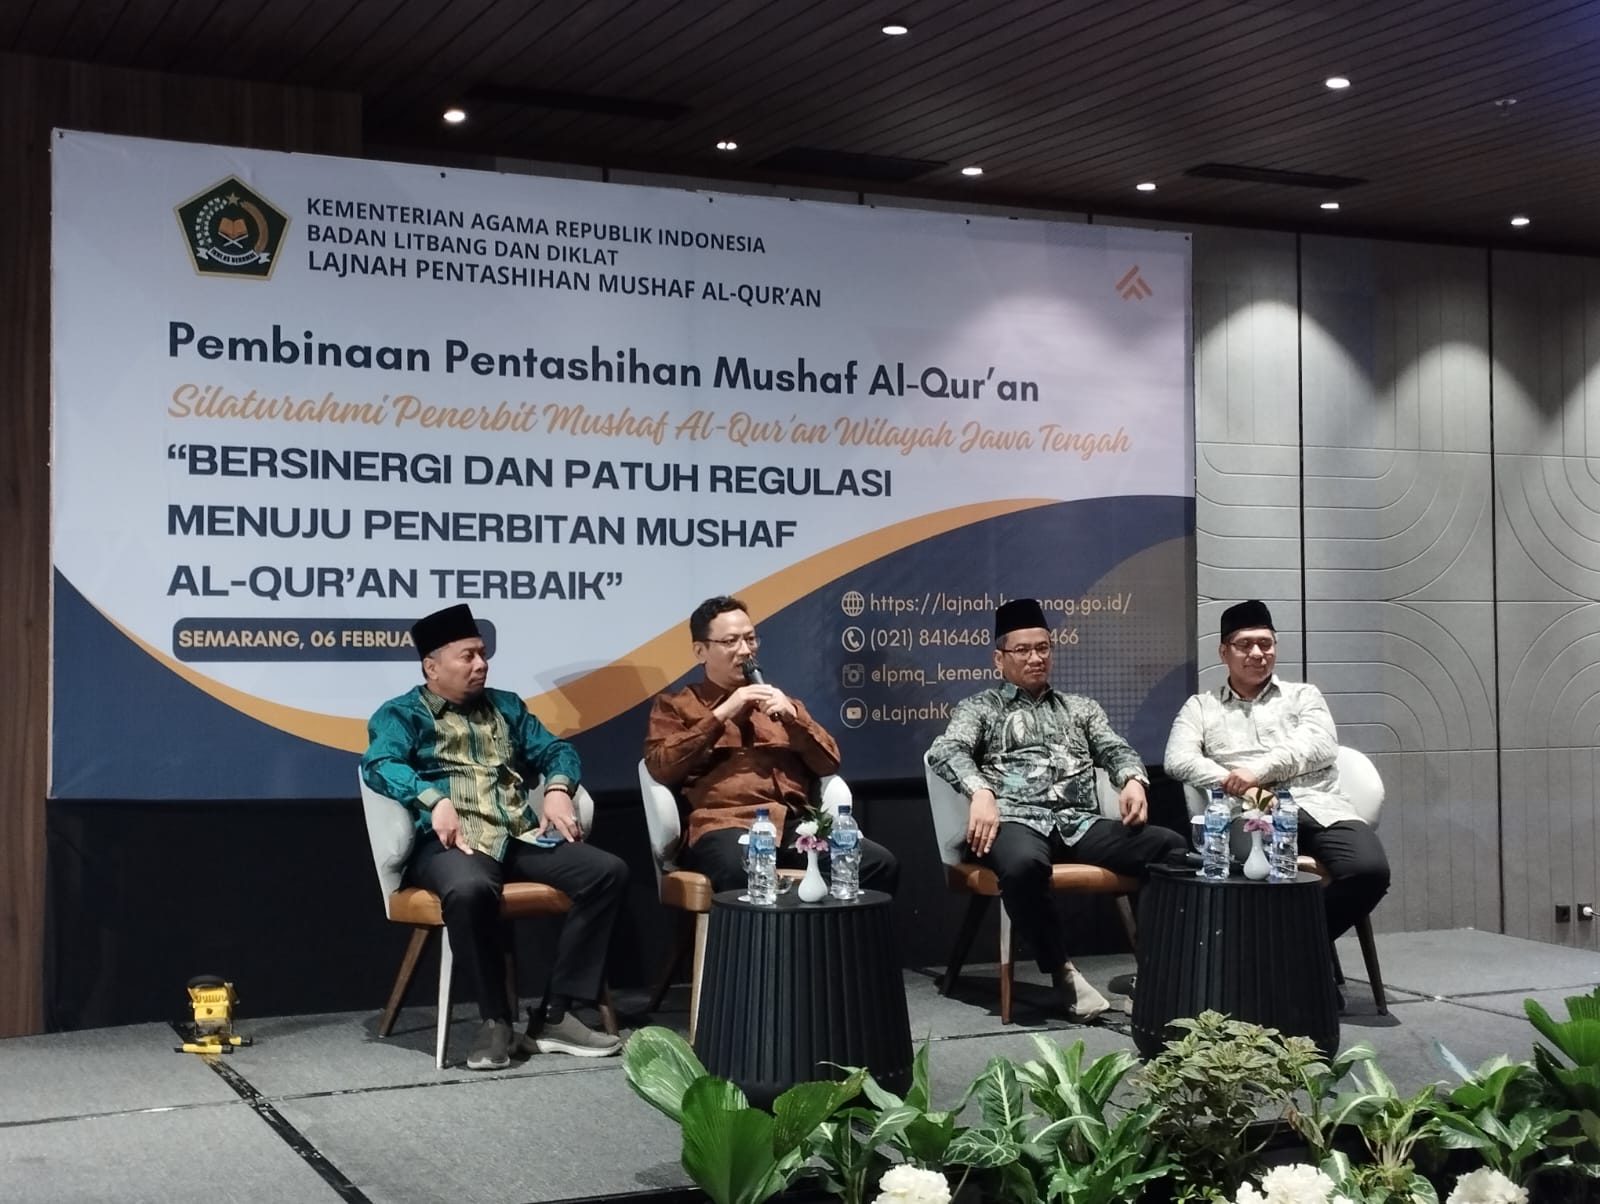 Pembinaan Penerbit Jawa Tengah, Upaya Taat Regulasi untuk Cetak Al-Qur’an Terbaik